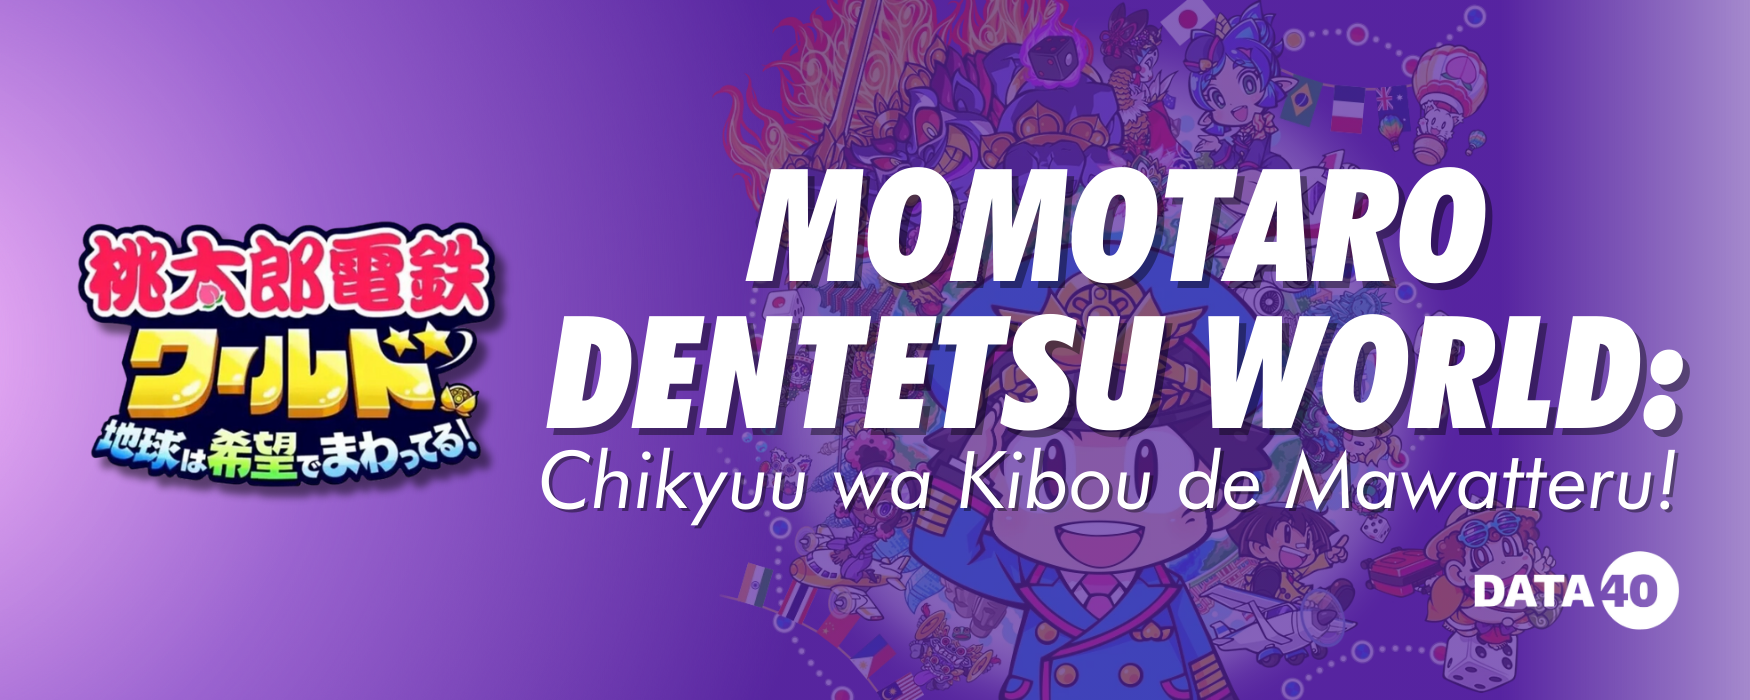 Momotaro Dentetsu World